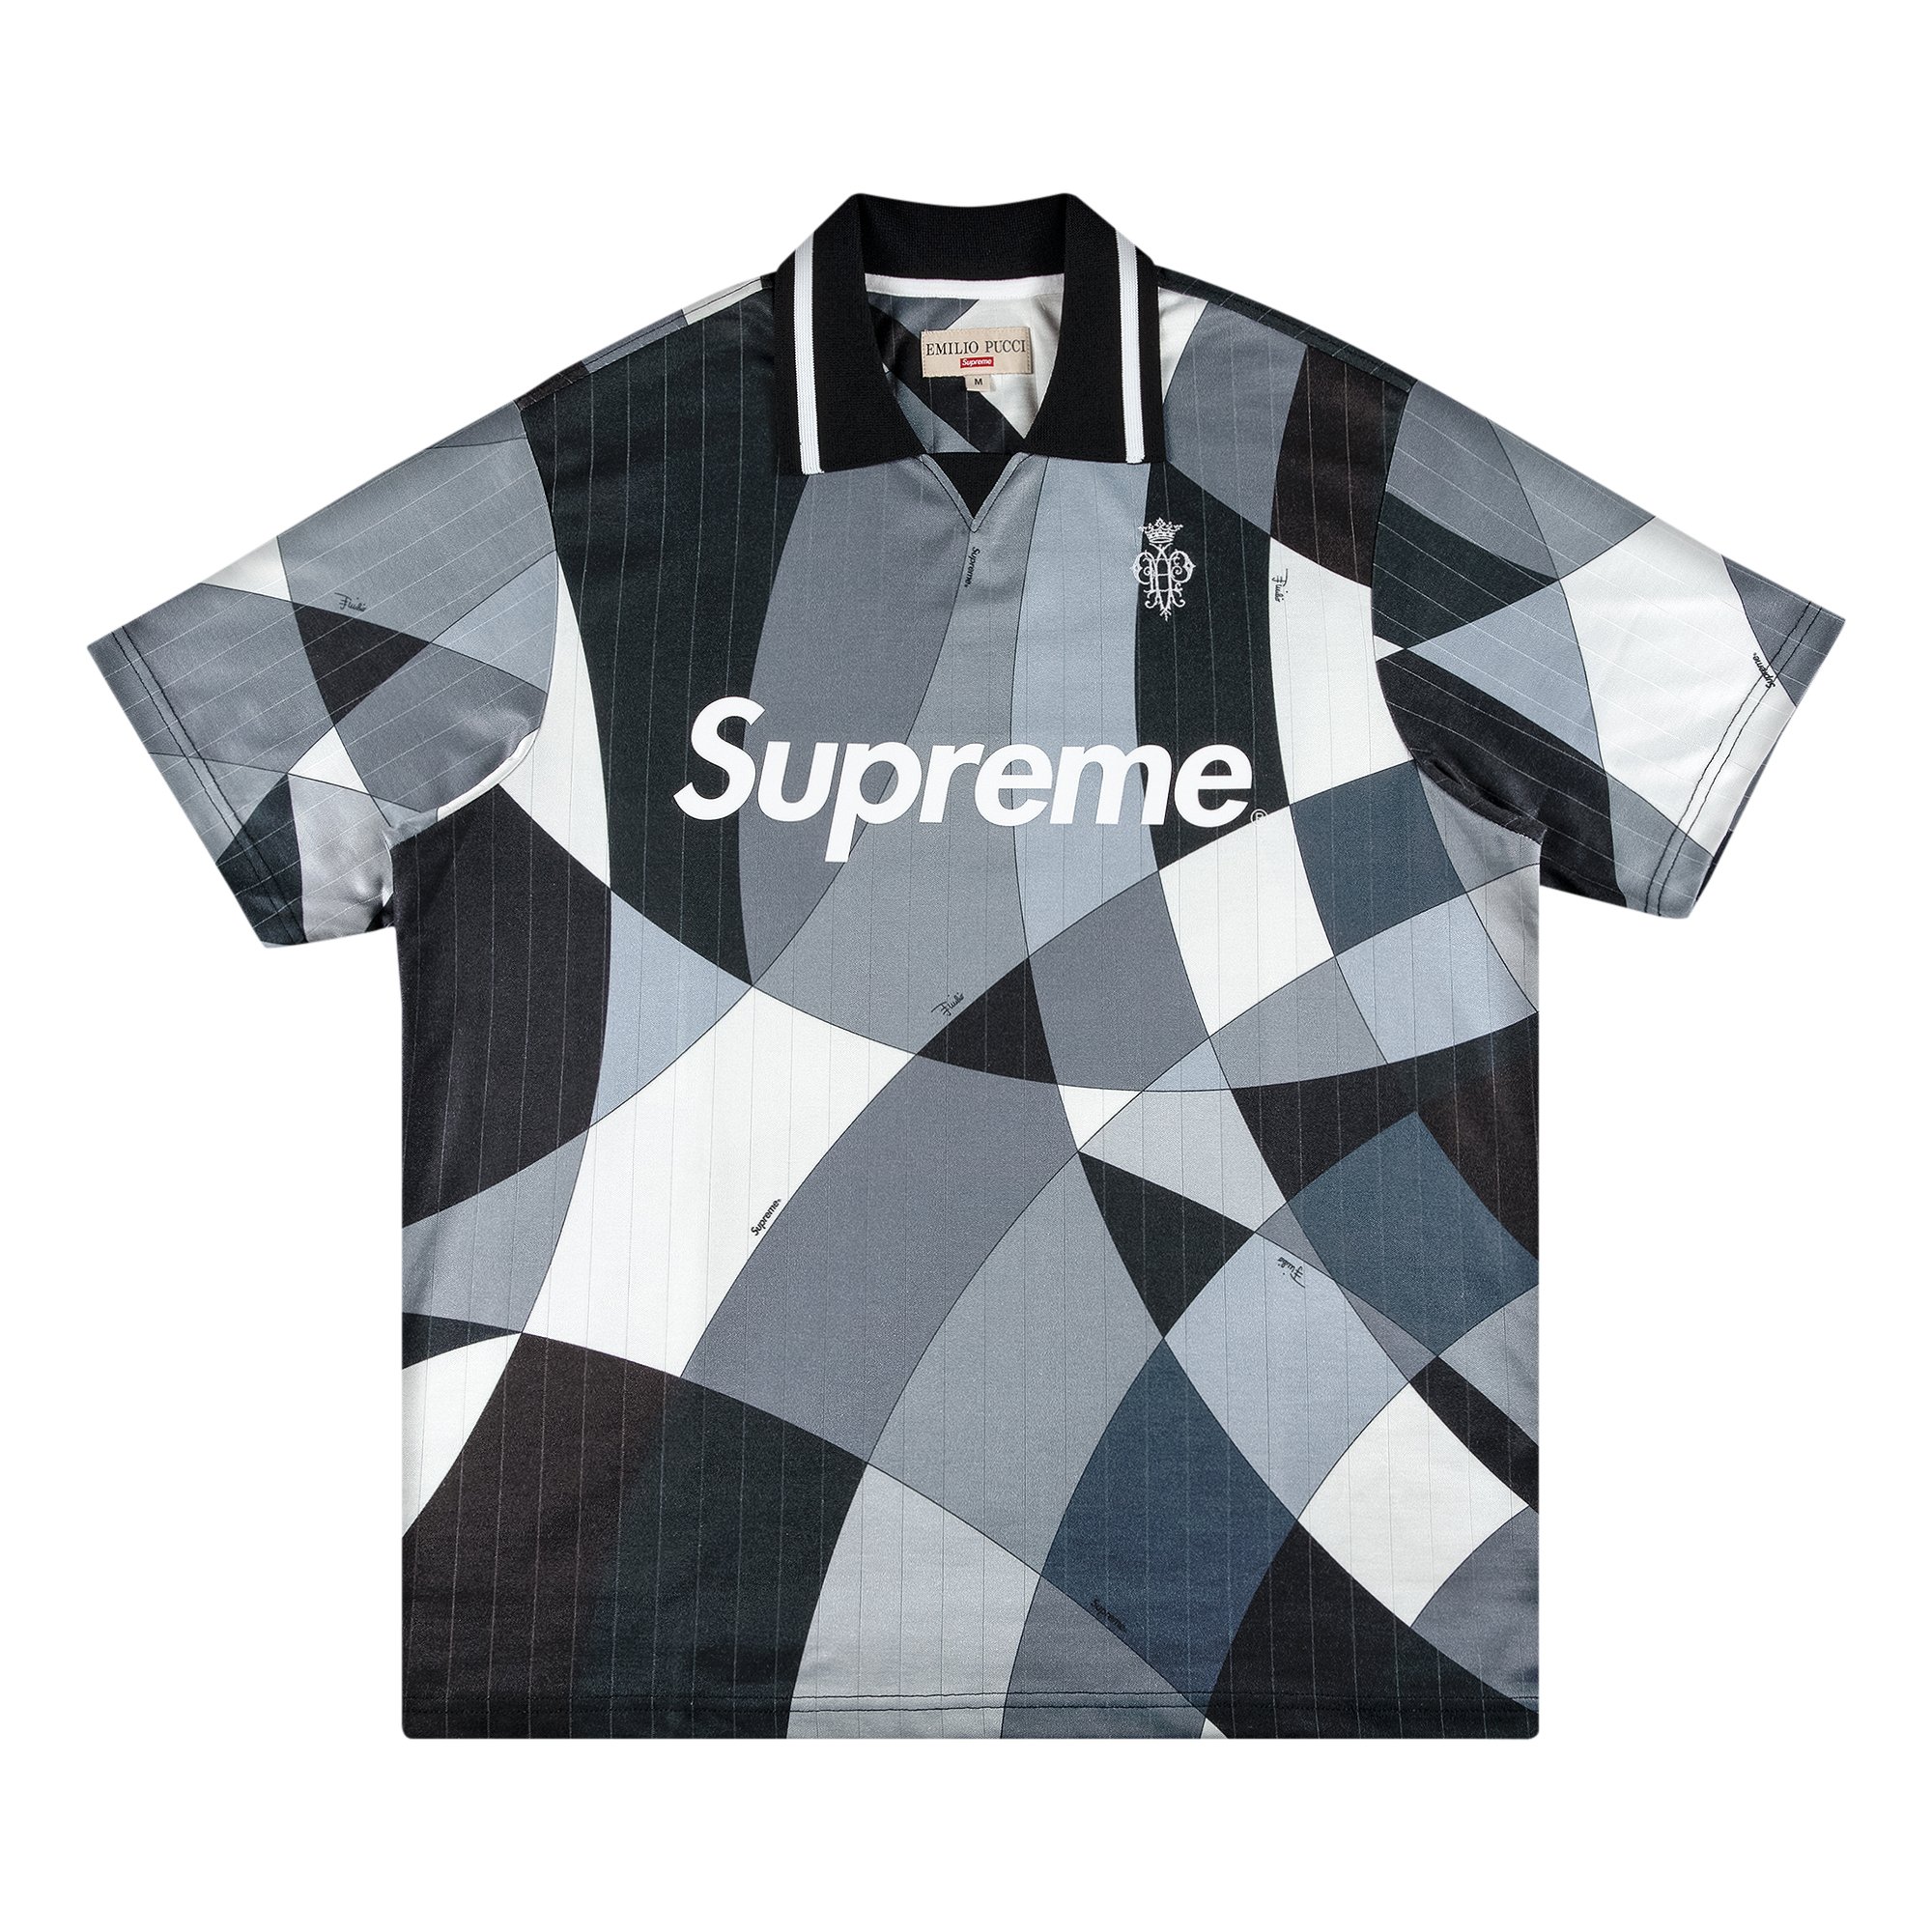 Supreme x Emilio Pucci Soccer Jersey 'Black'